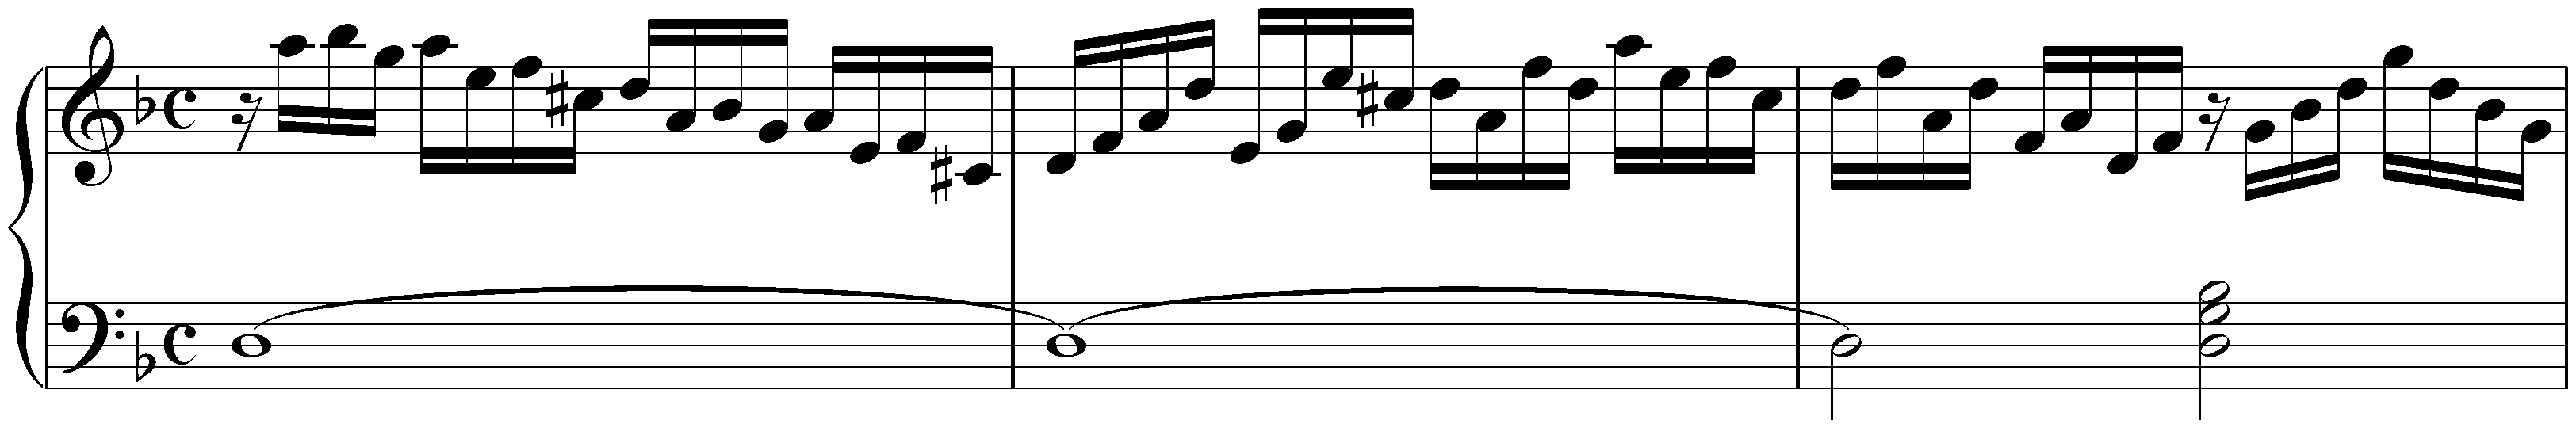 Prélude in D minor, HWV 565